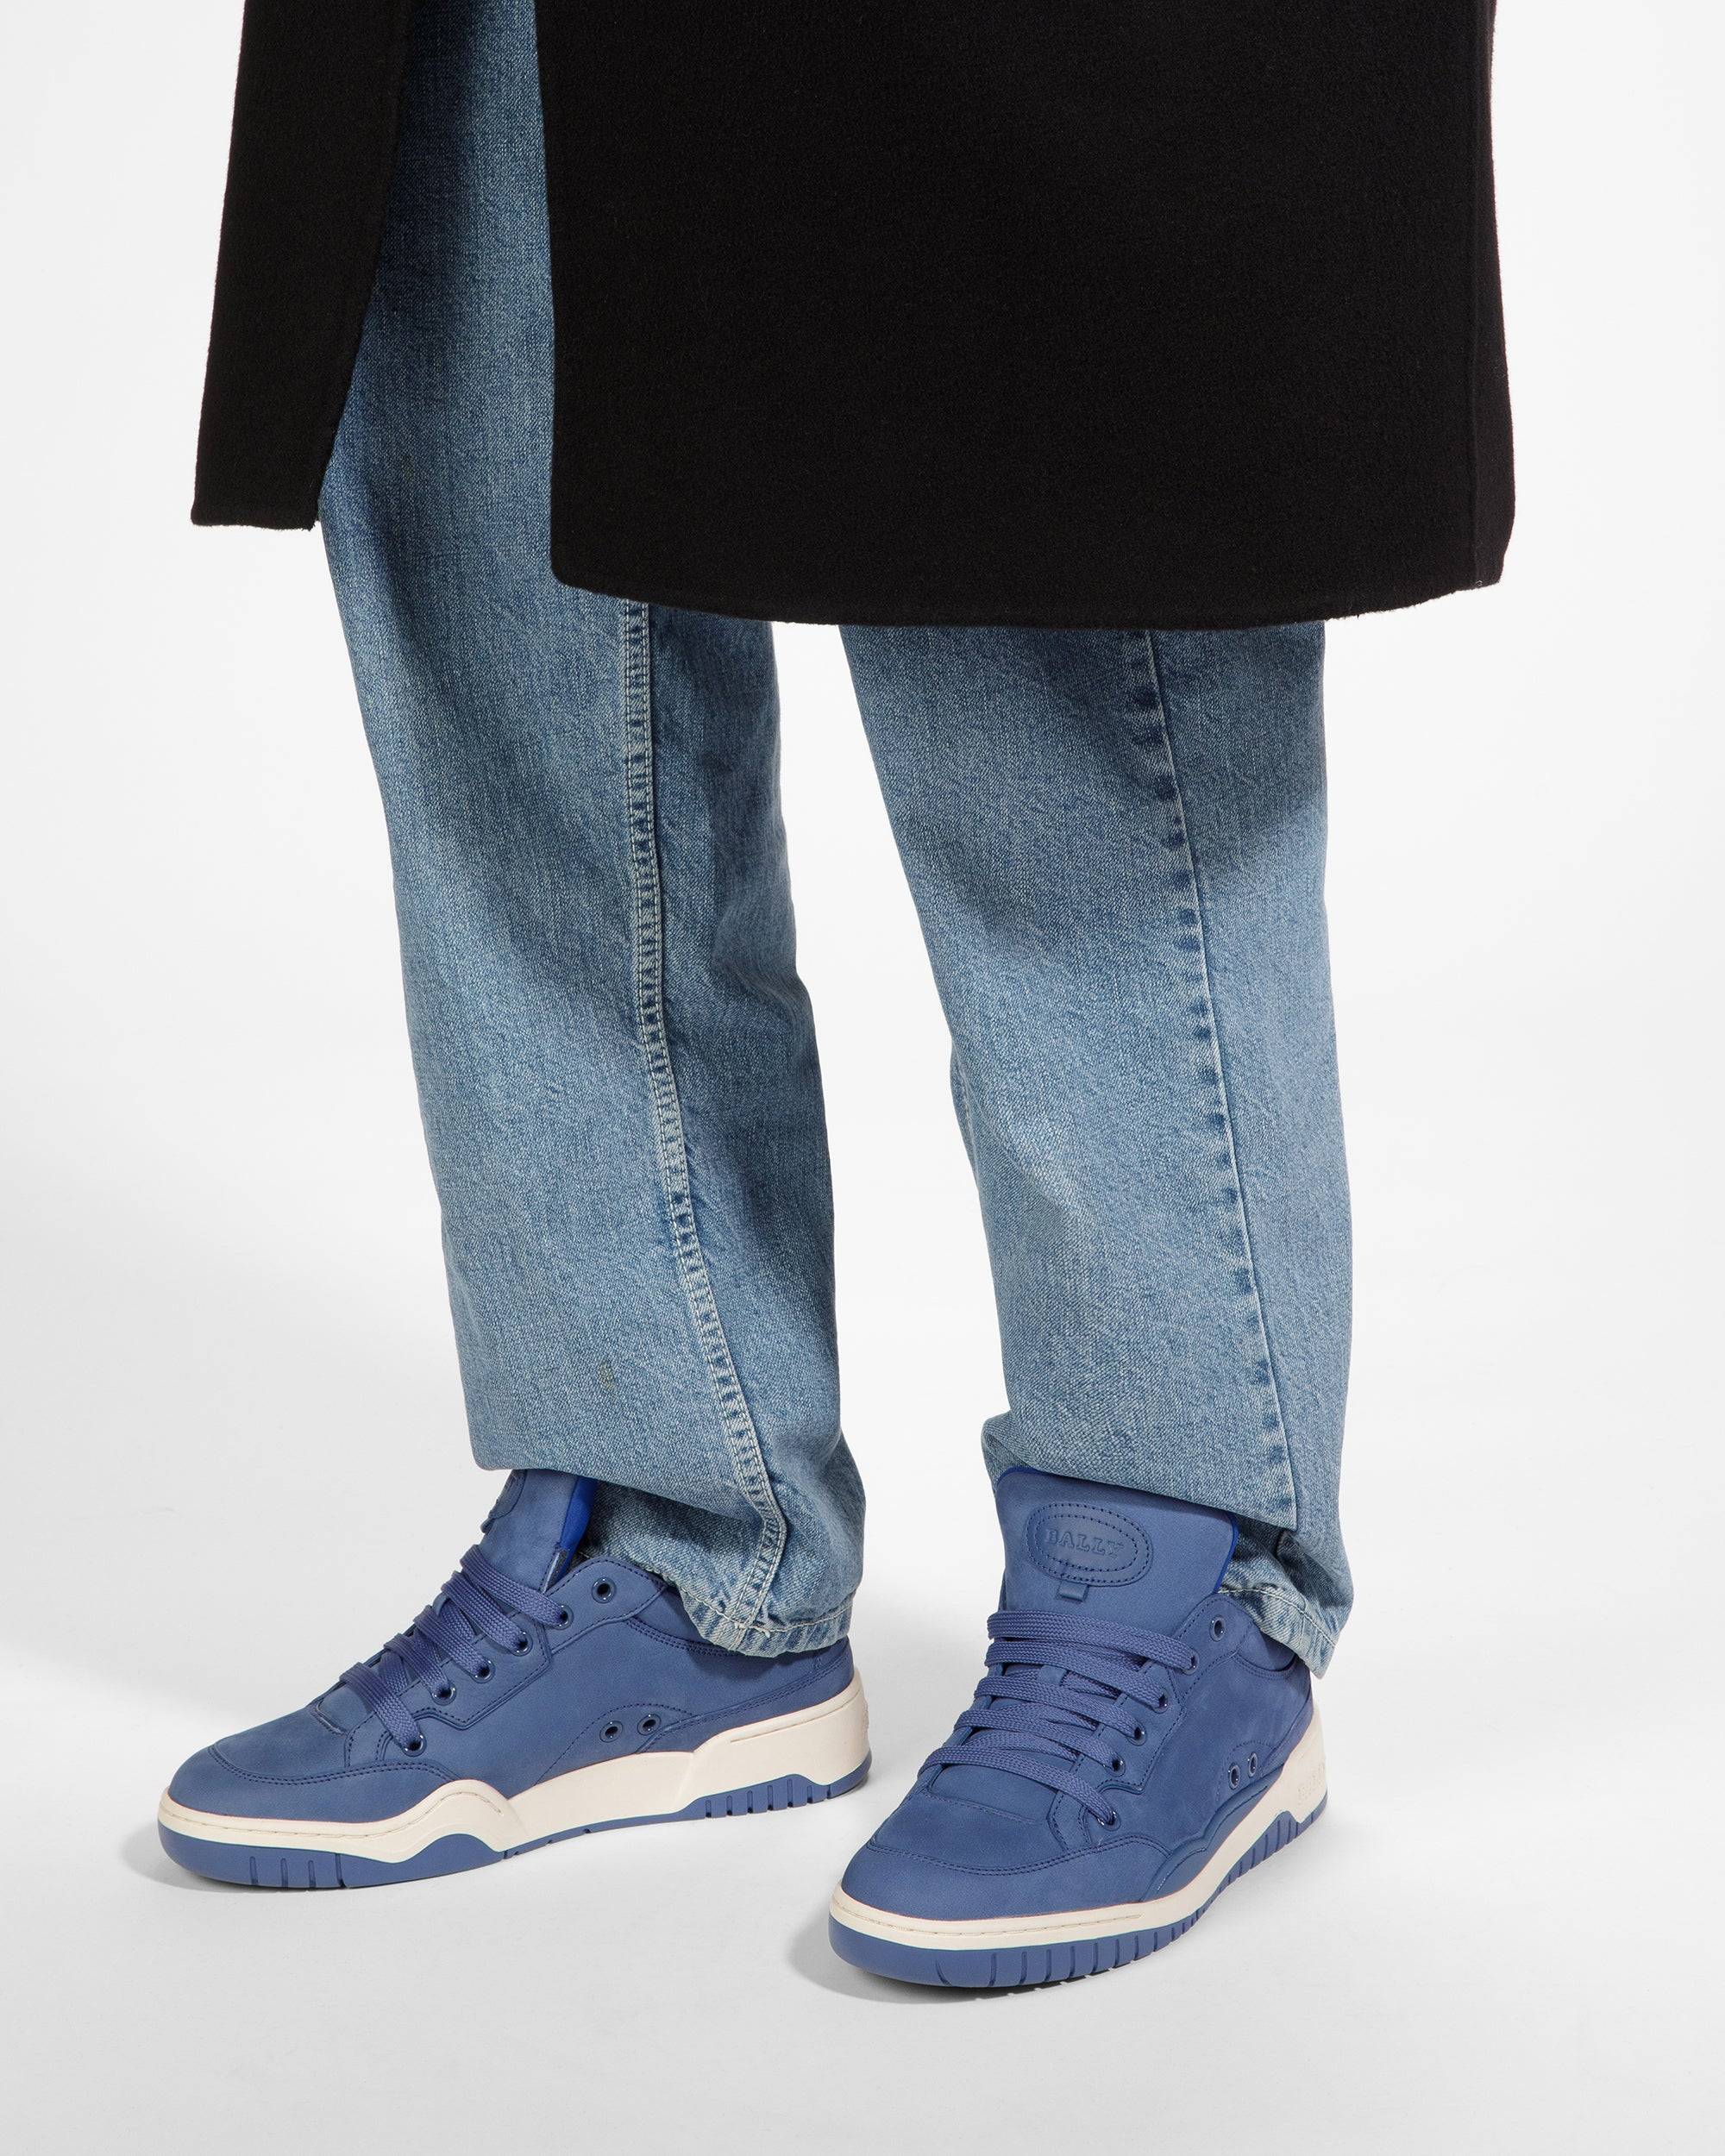 Kiro Sneaker In Pelle Blu Elettrico - Bally - 07